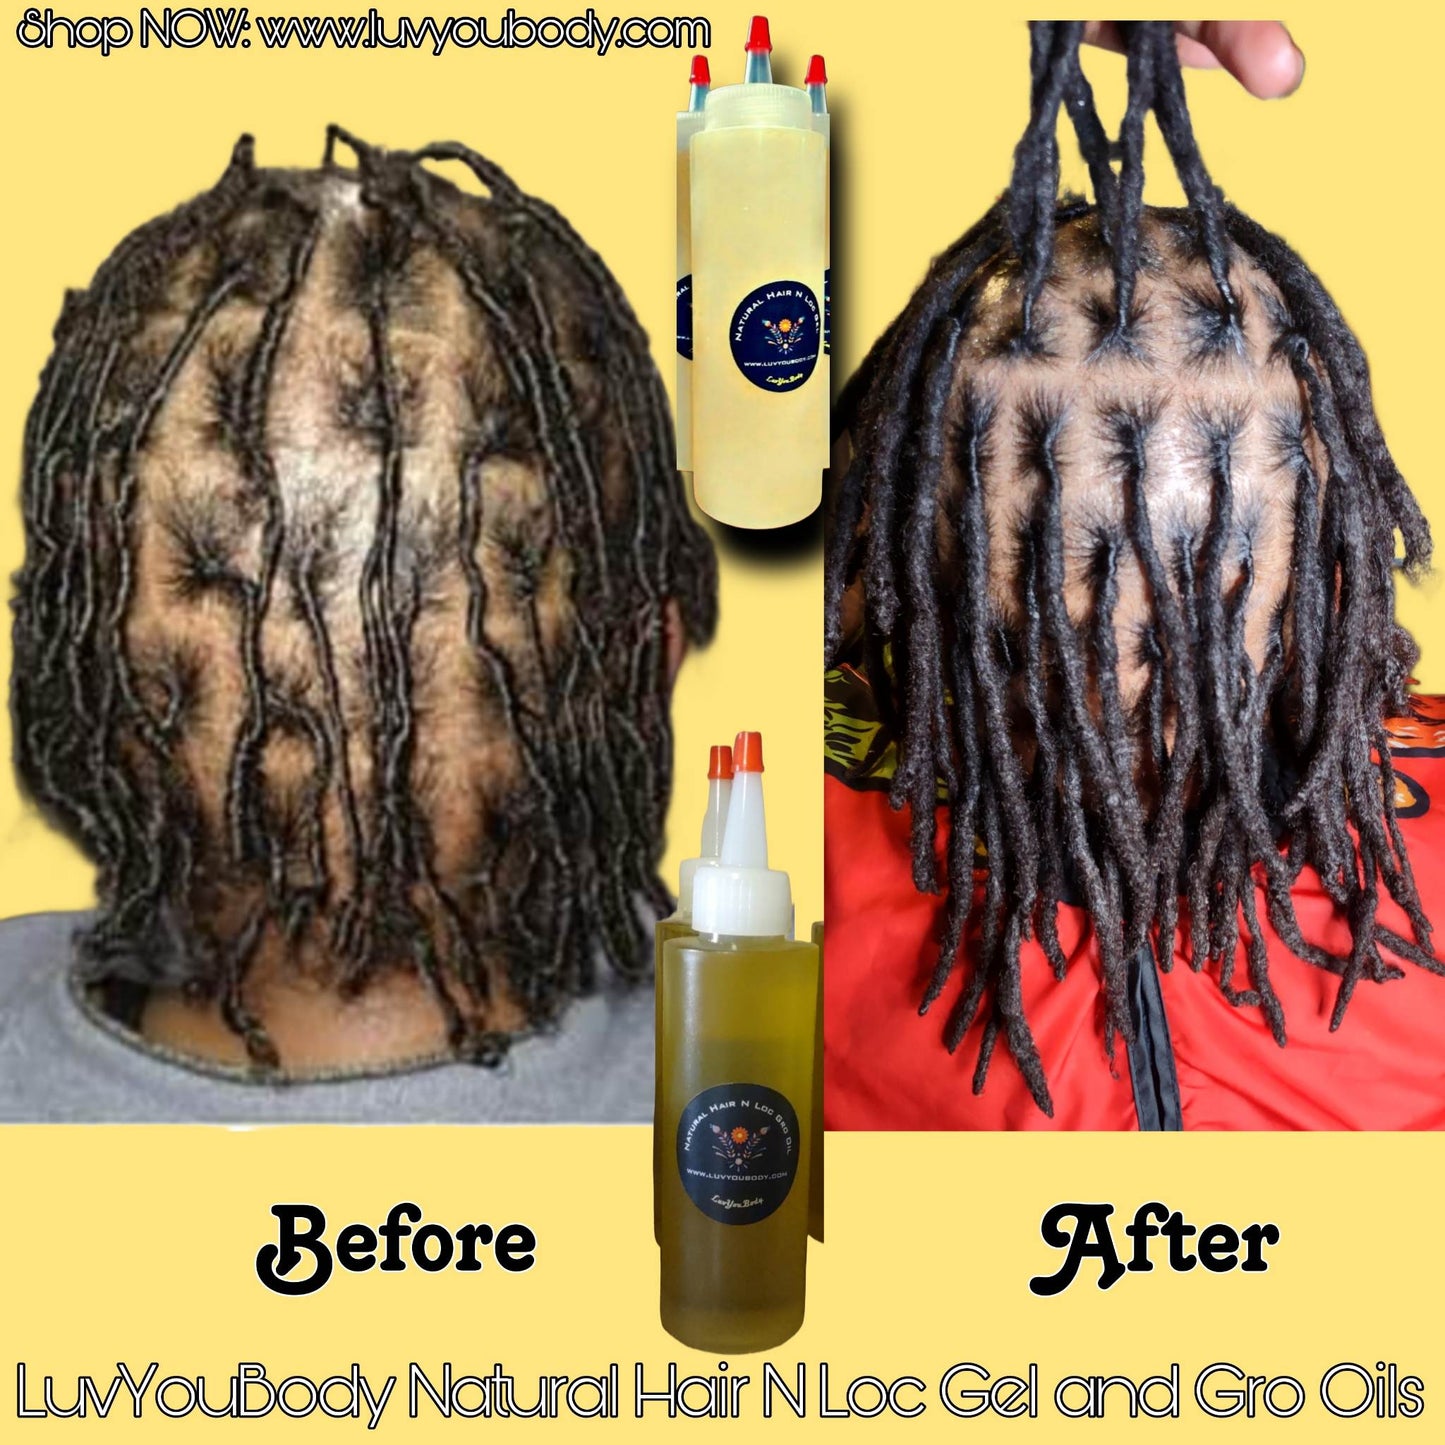 Gro Oil - Hair Growth Oil